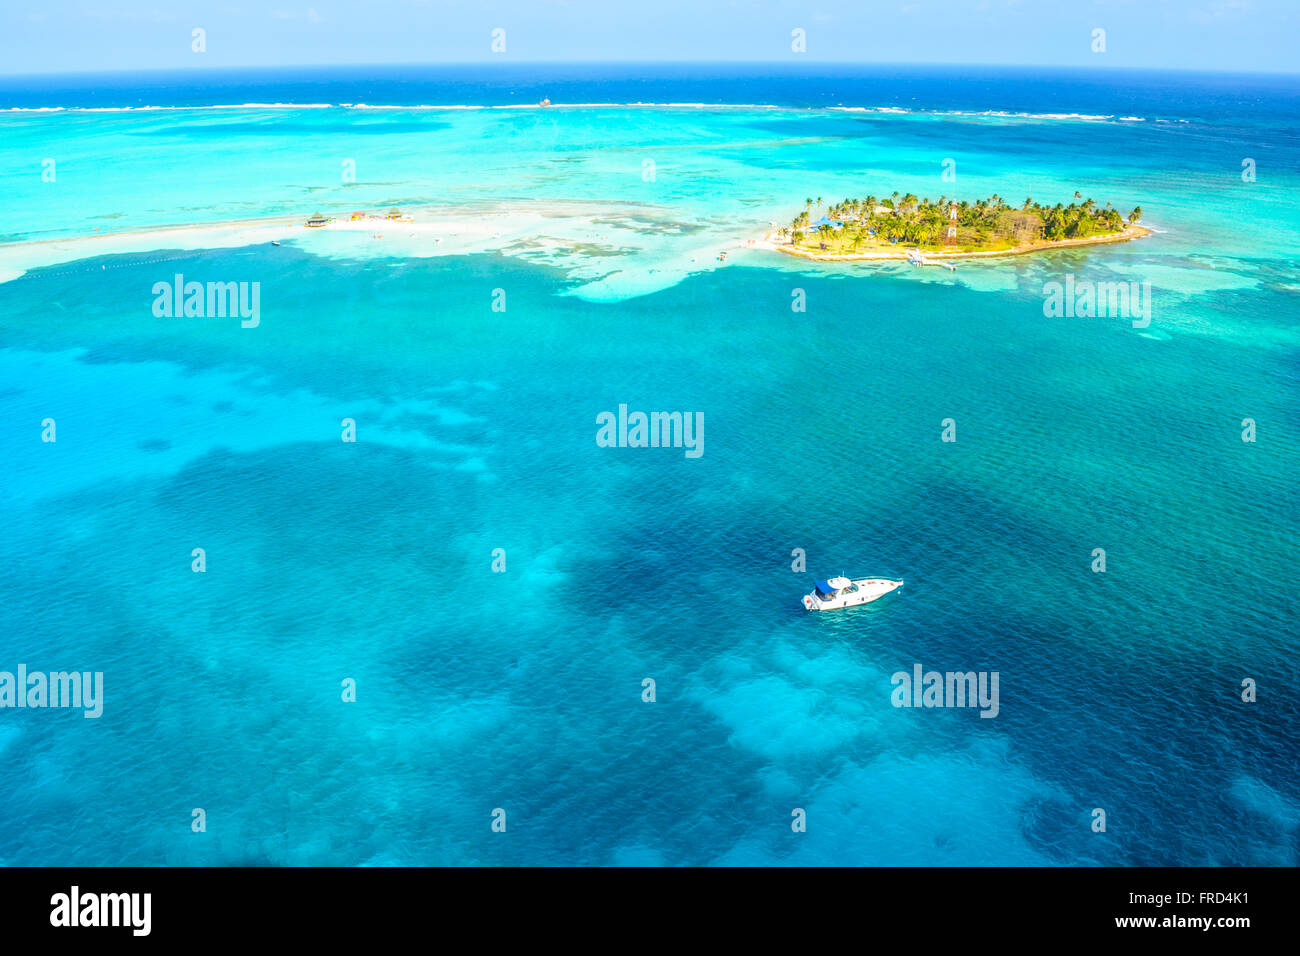 Aerial View of El Acuario Island Stock Photo